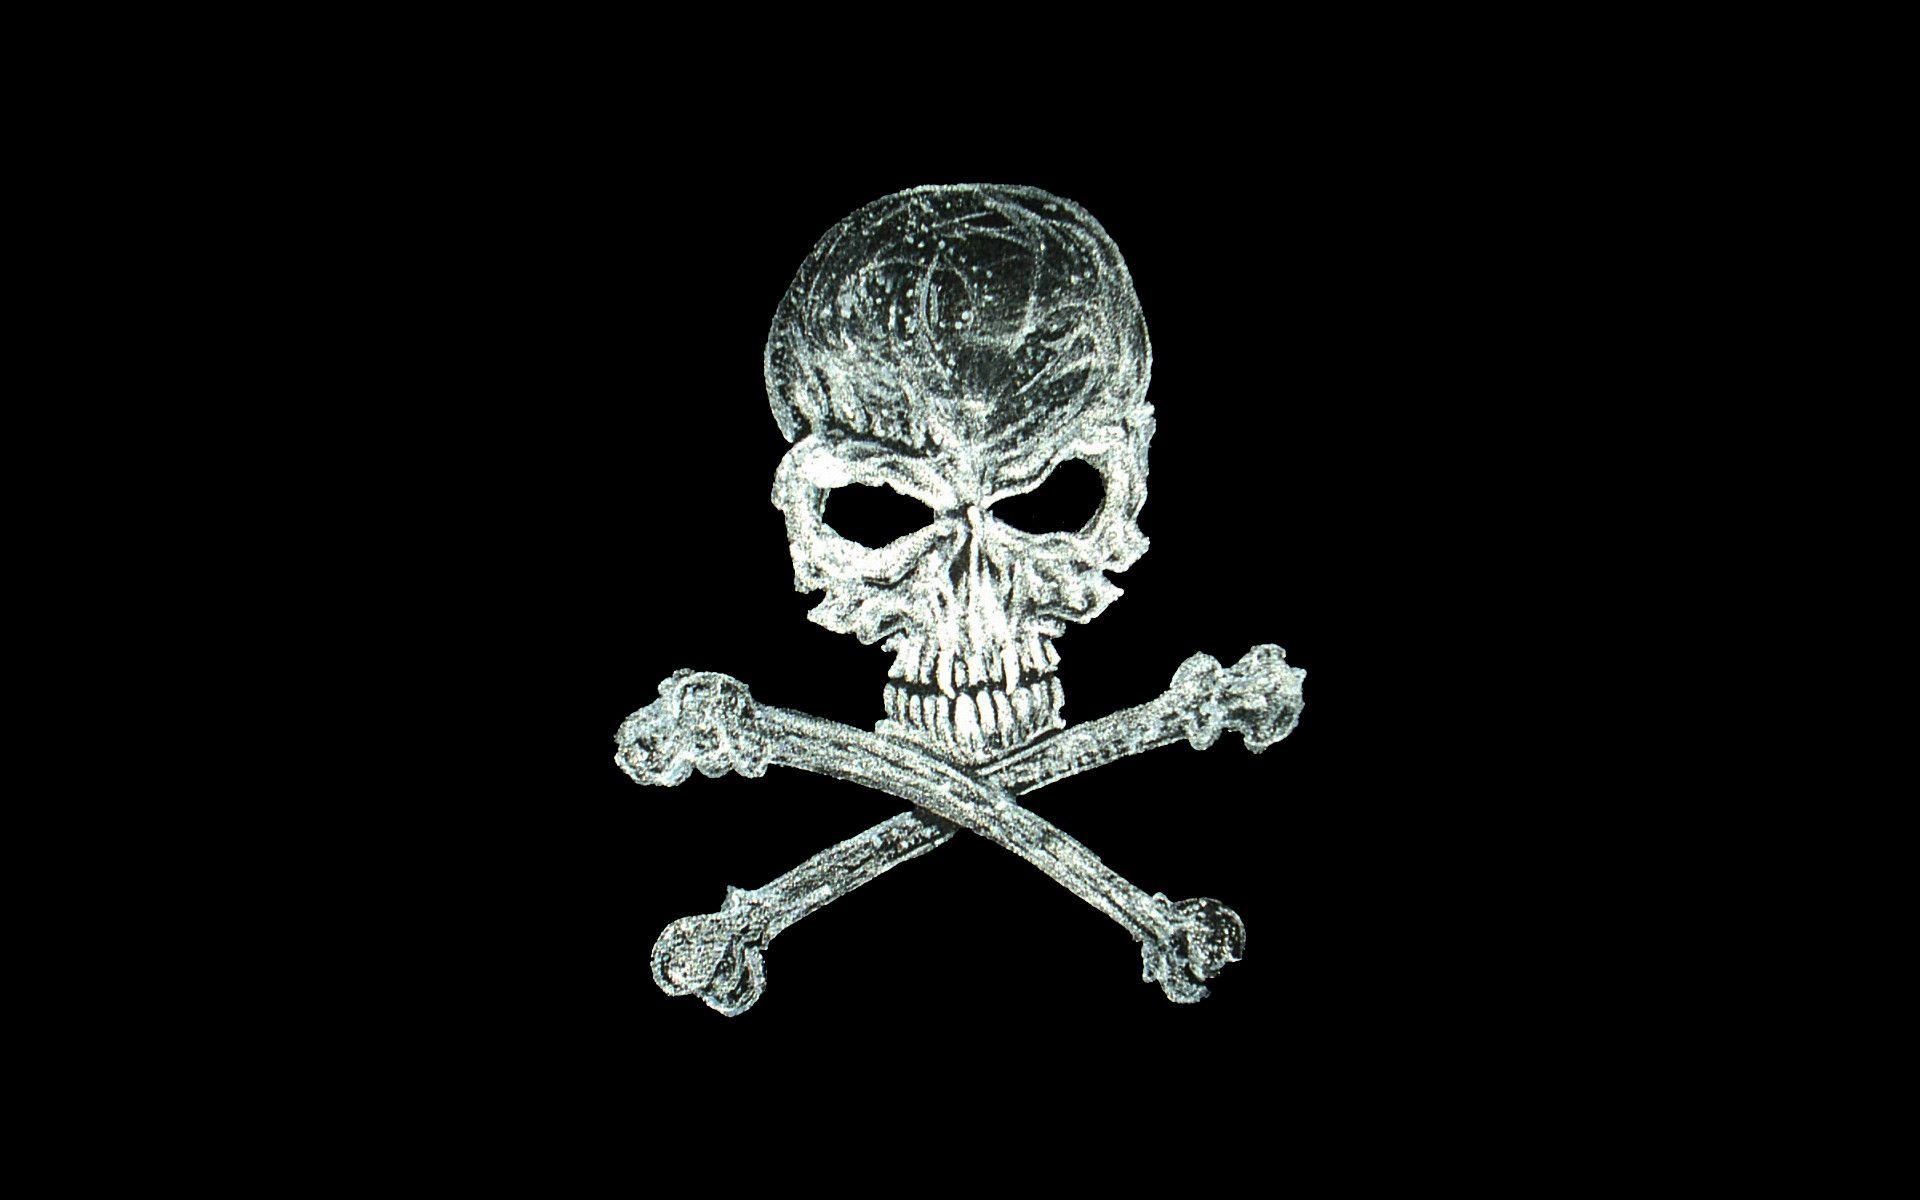 Wallpaper For > Pirate Skull Wallpaper